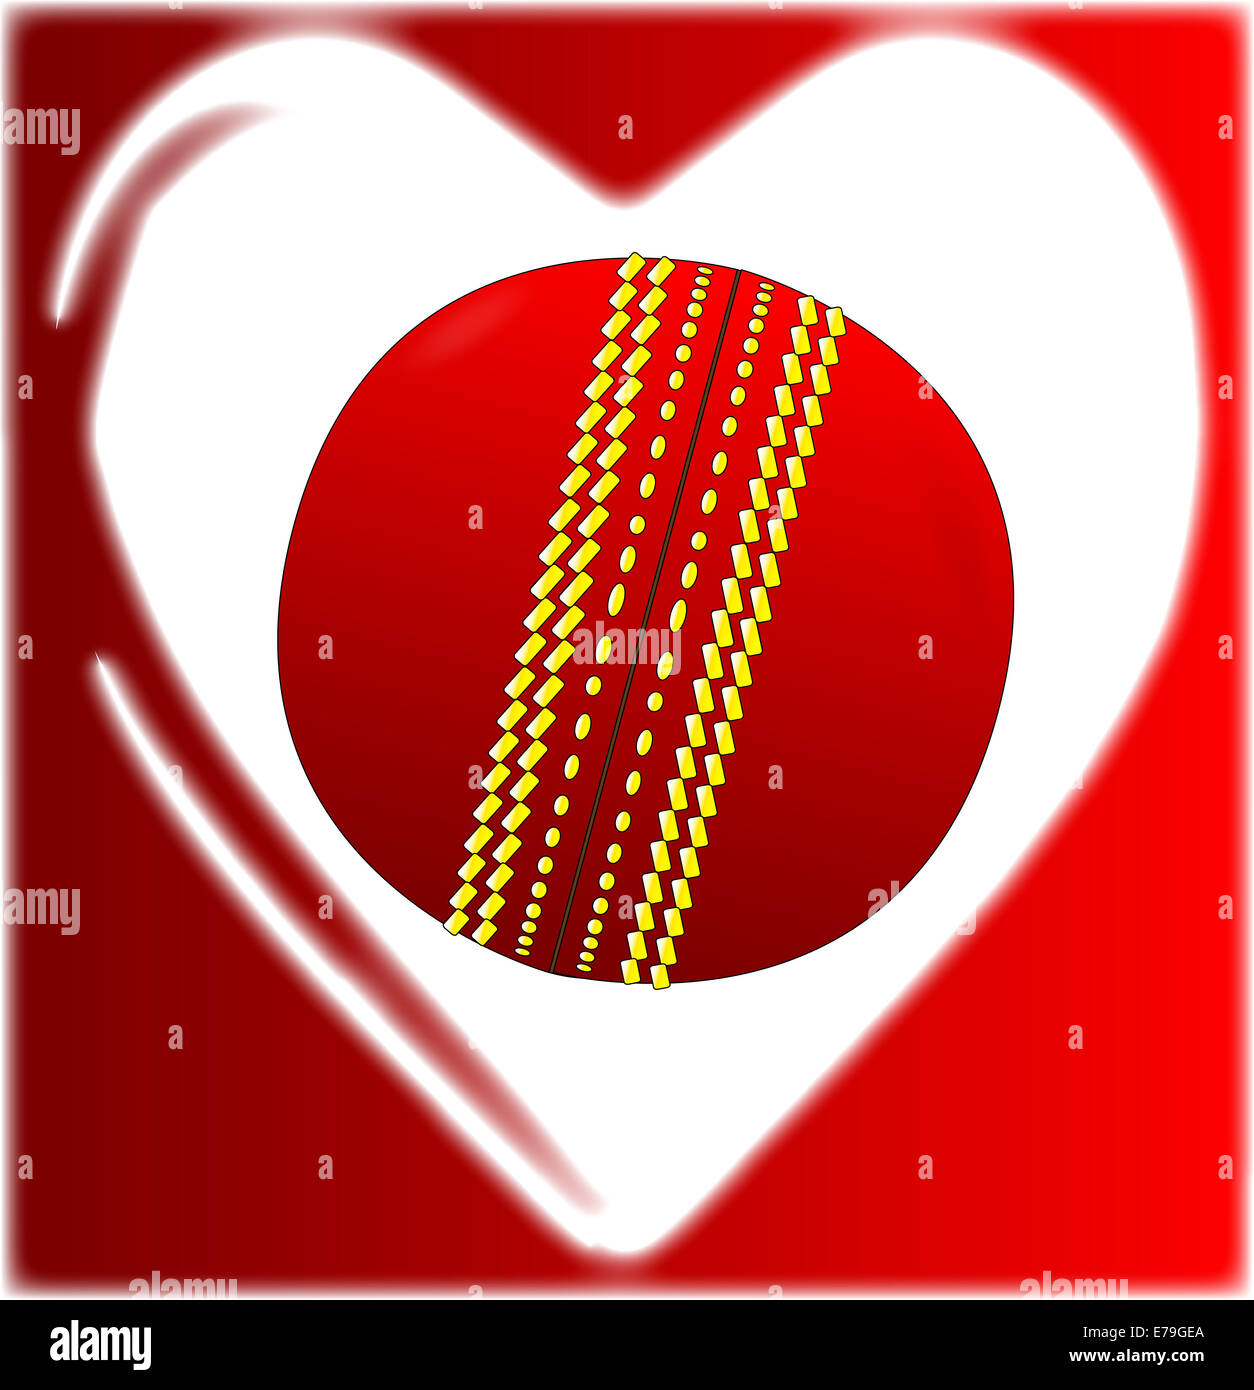 Una bola de críquet en una caricatura tradicional con forma de corazón Foto de stock